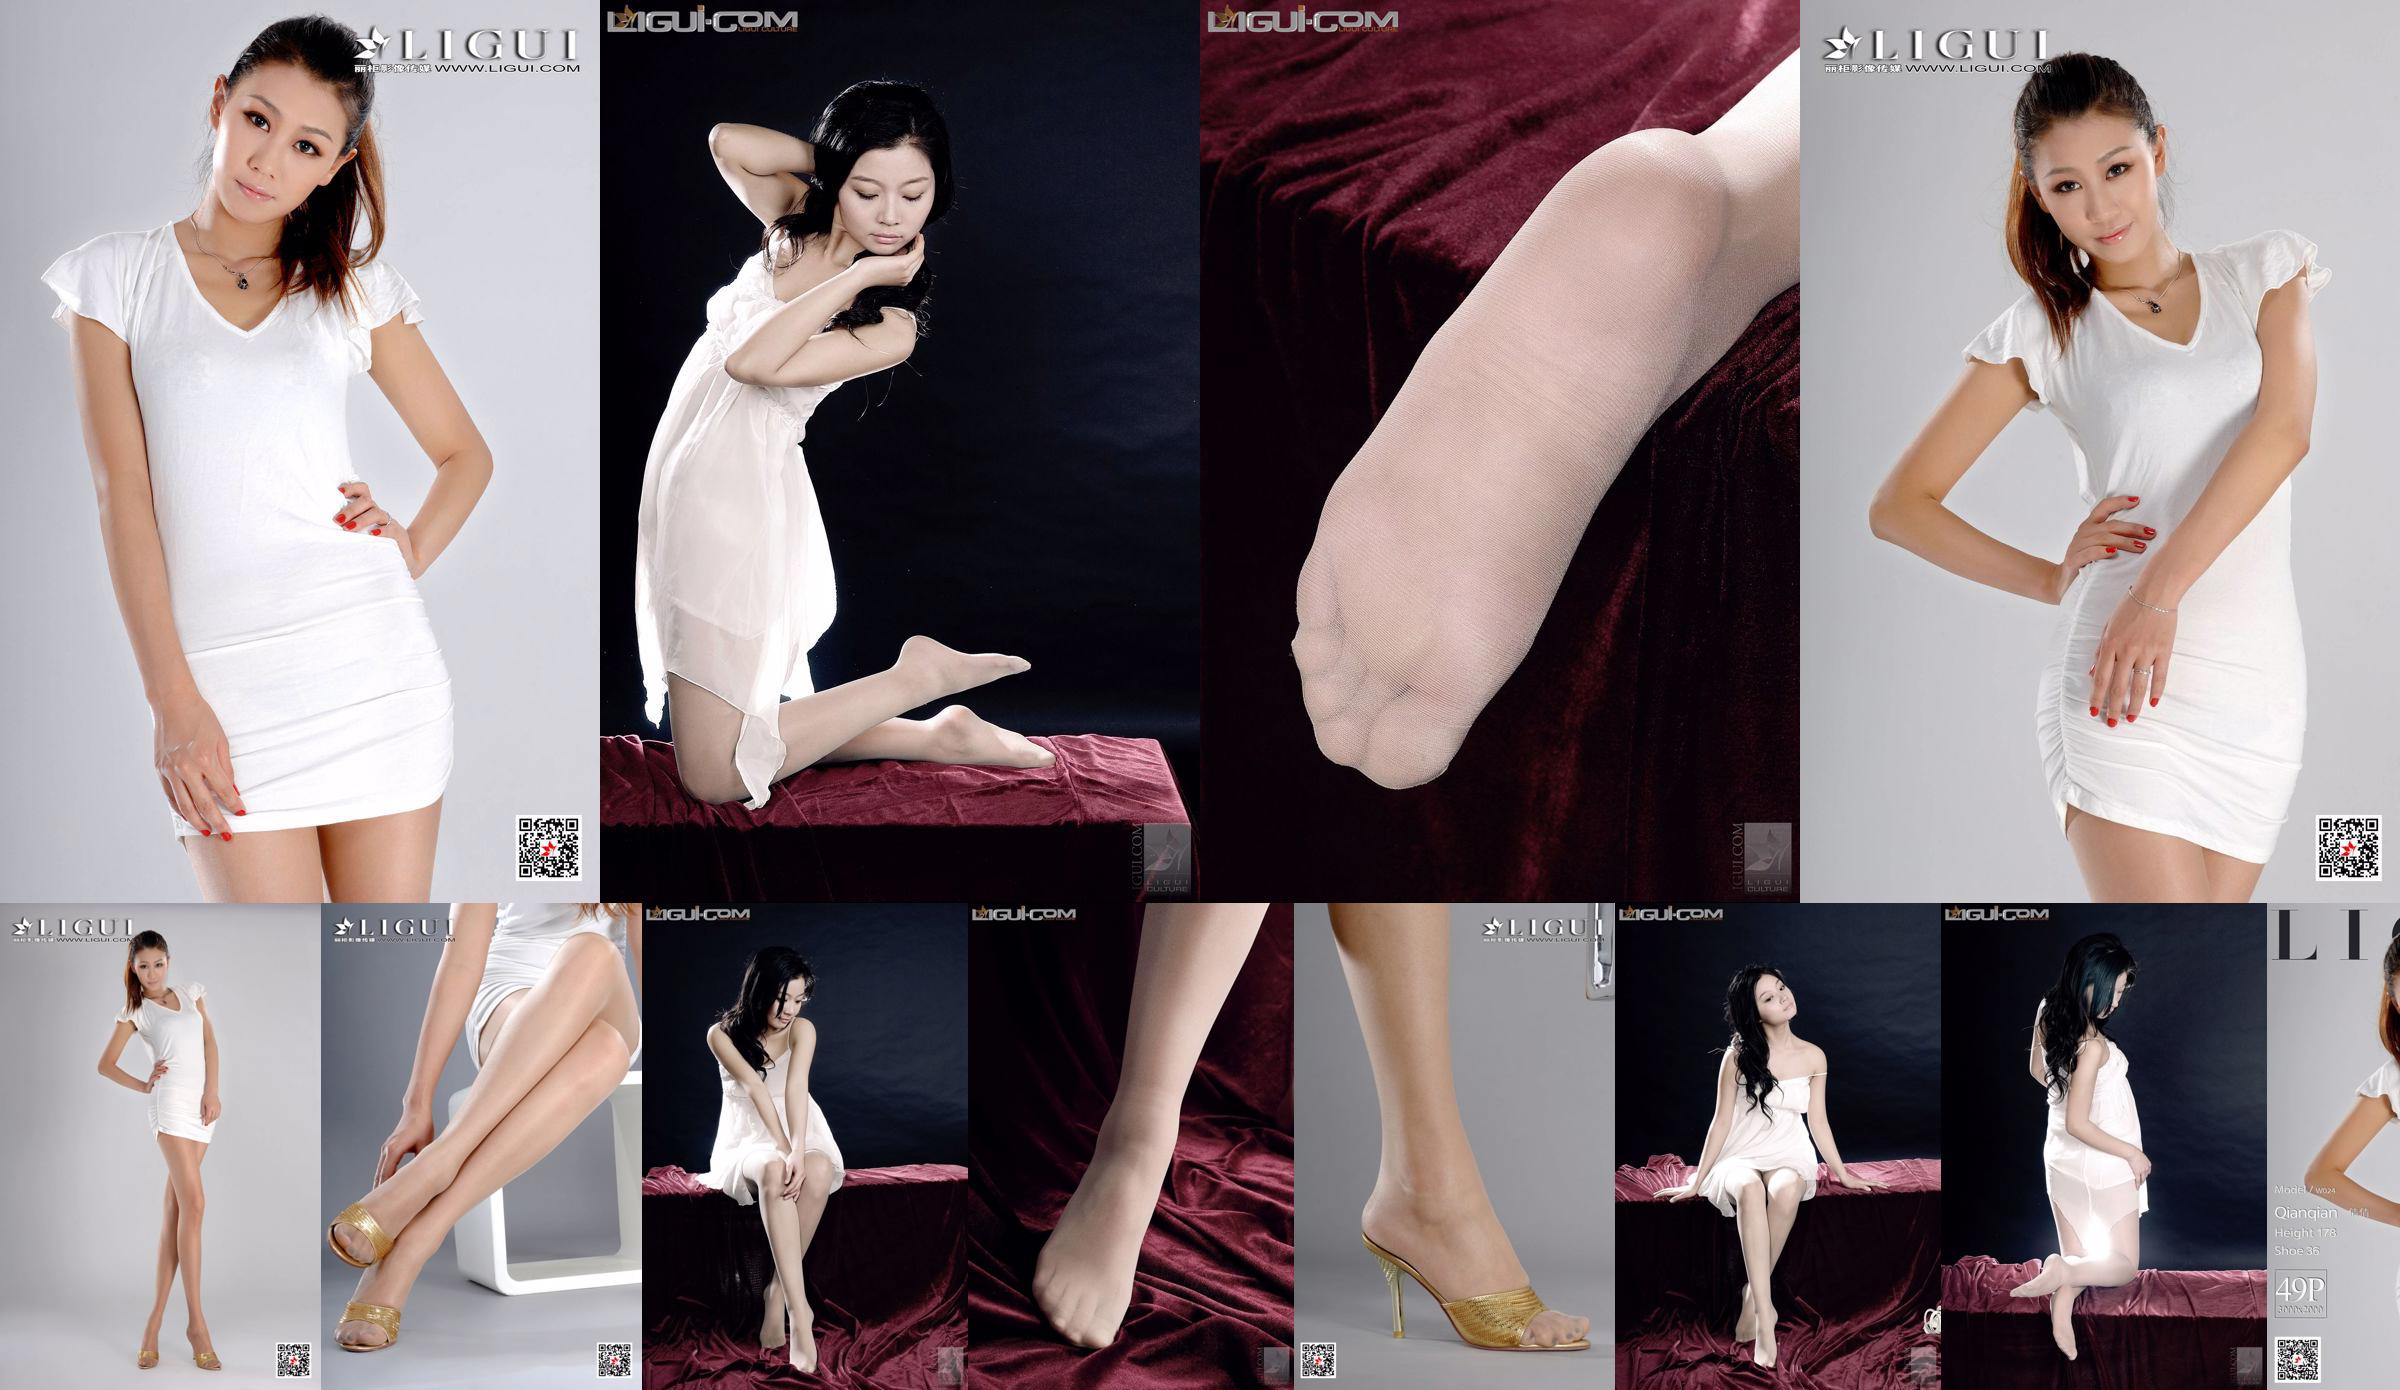 Người mẫu Qianqian "Cô gái cao với chân dài" [LIGUI] Người đẹp mạng No.00bdc9 Trang 2